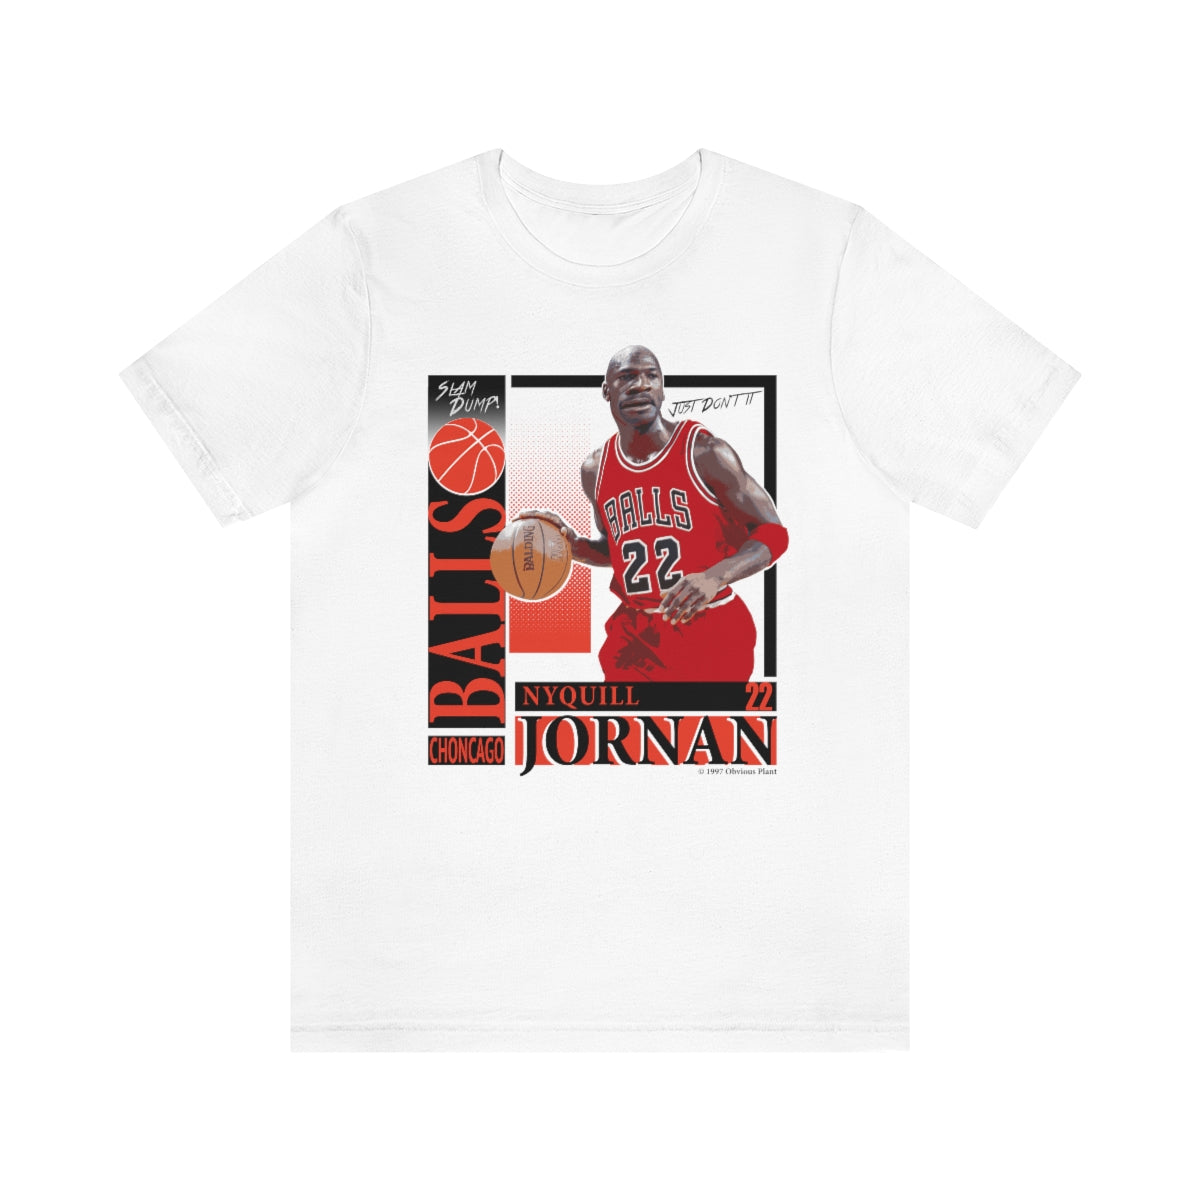 michael jordan shirt